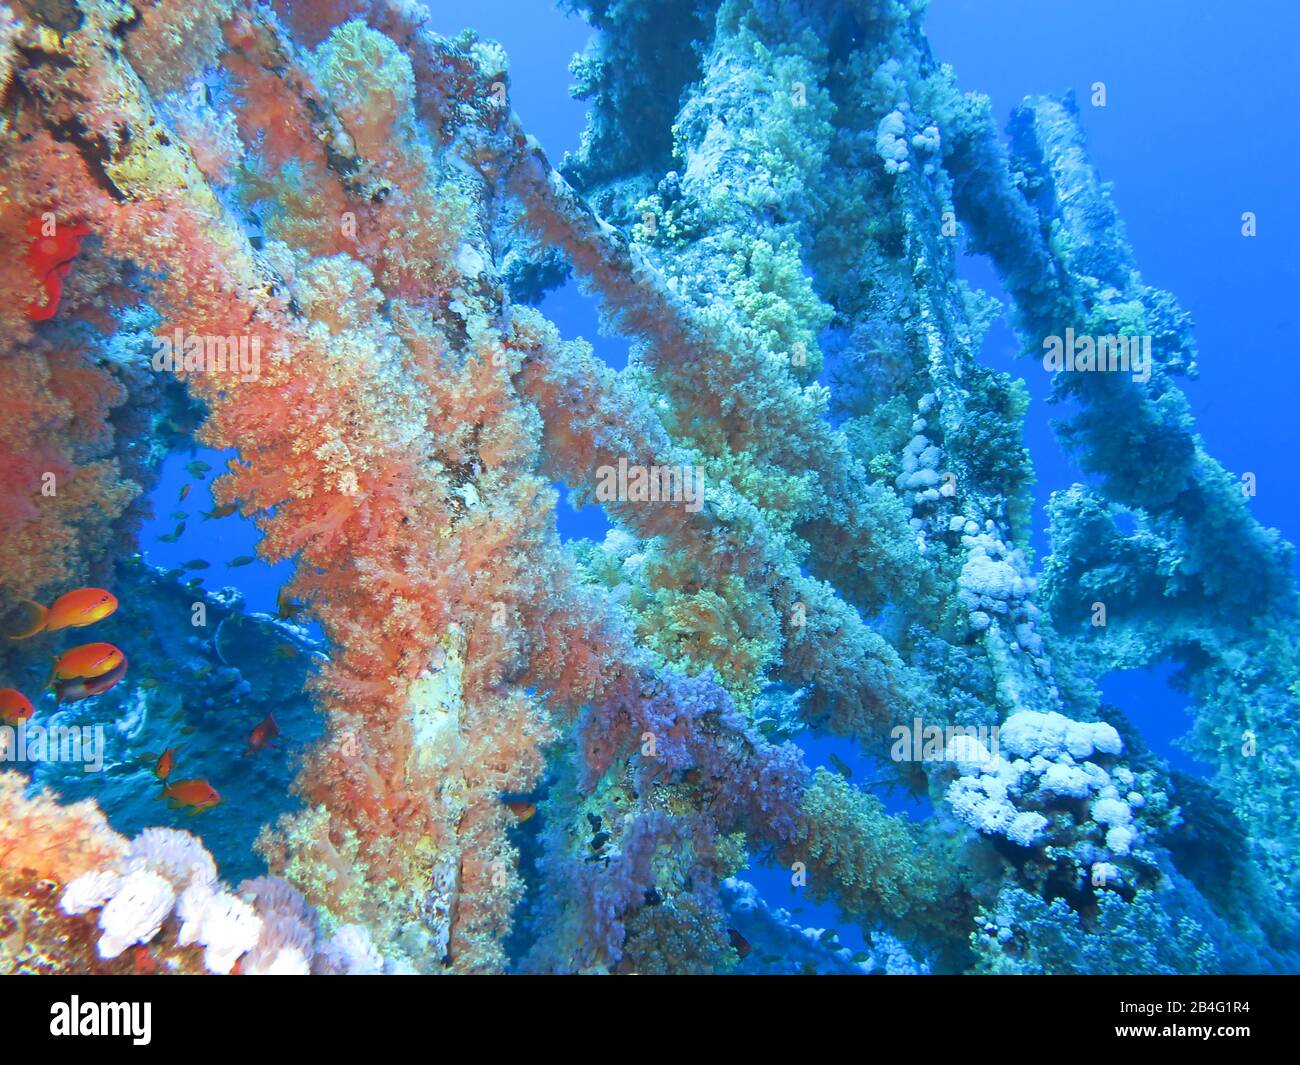 Rack Numidia, Korallen, Brother Islands, Rotes Meer, Aegypten / Ägypten Foto de stock